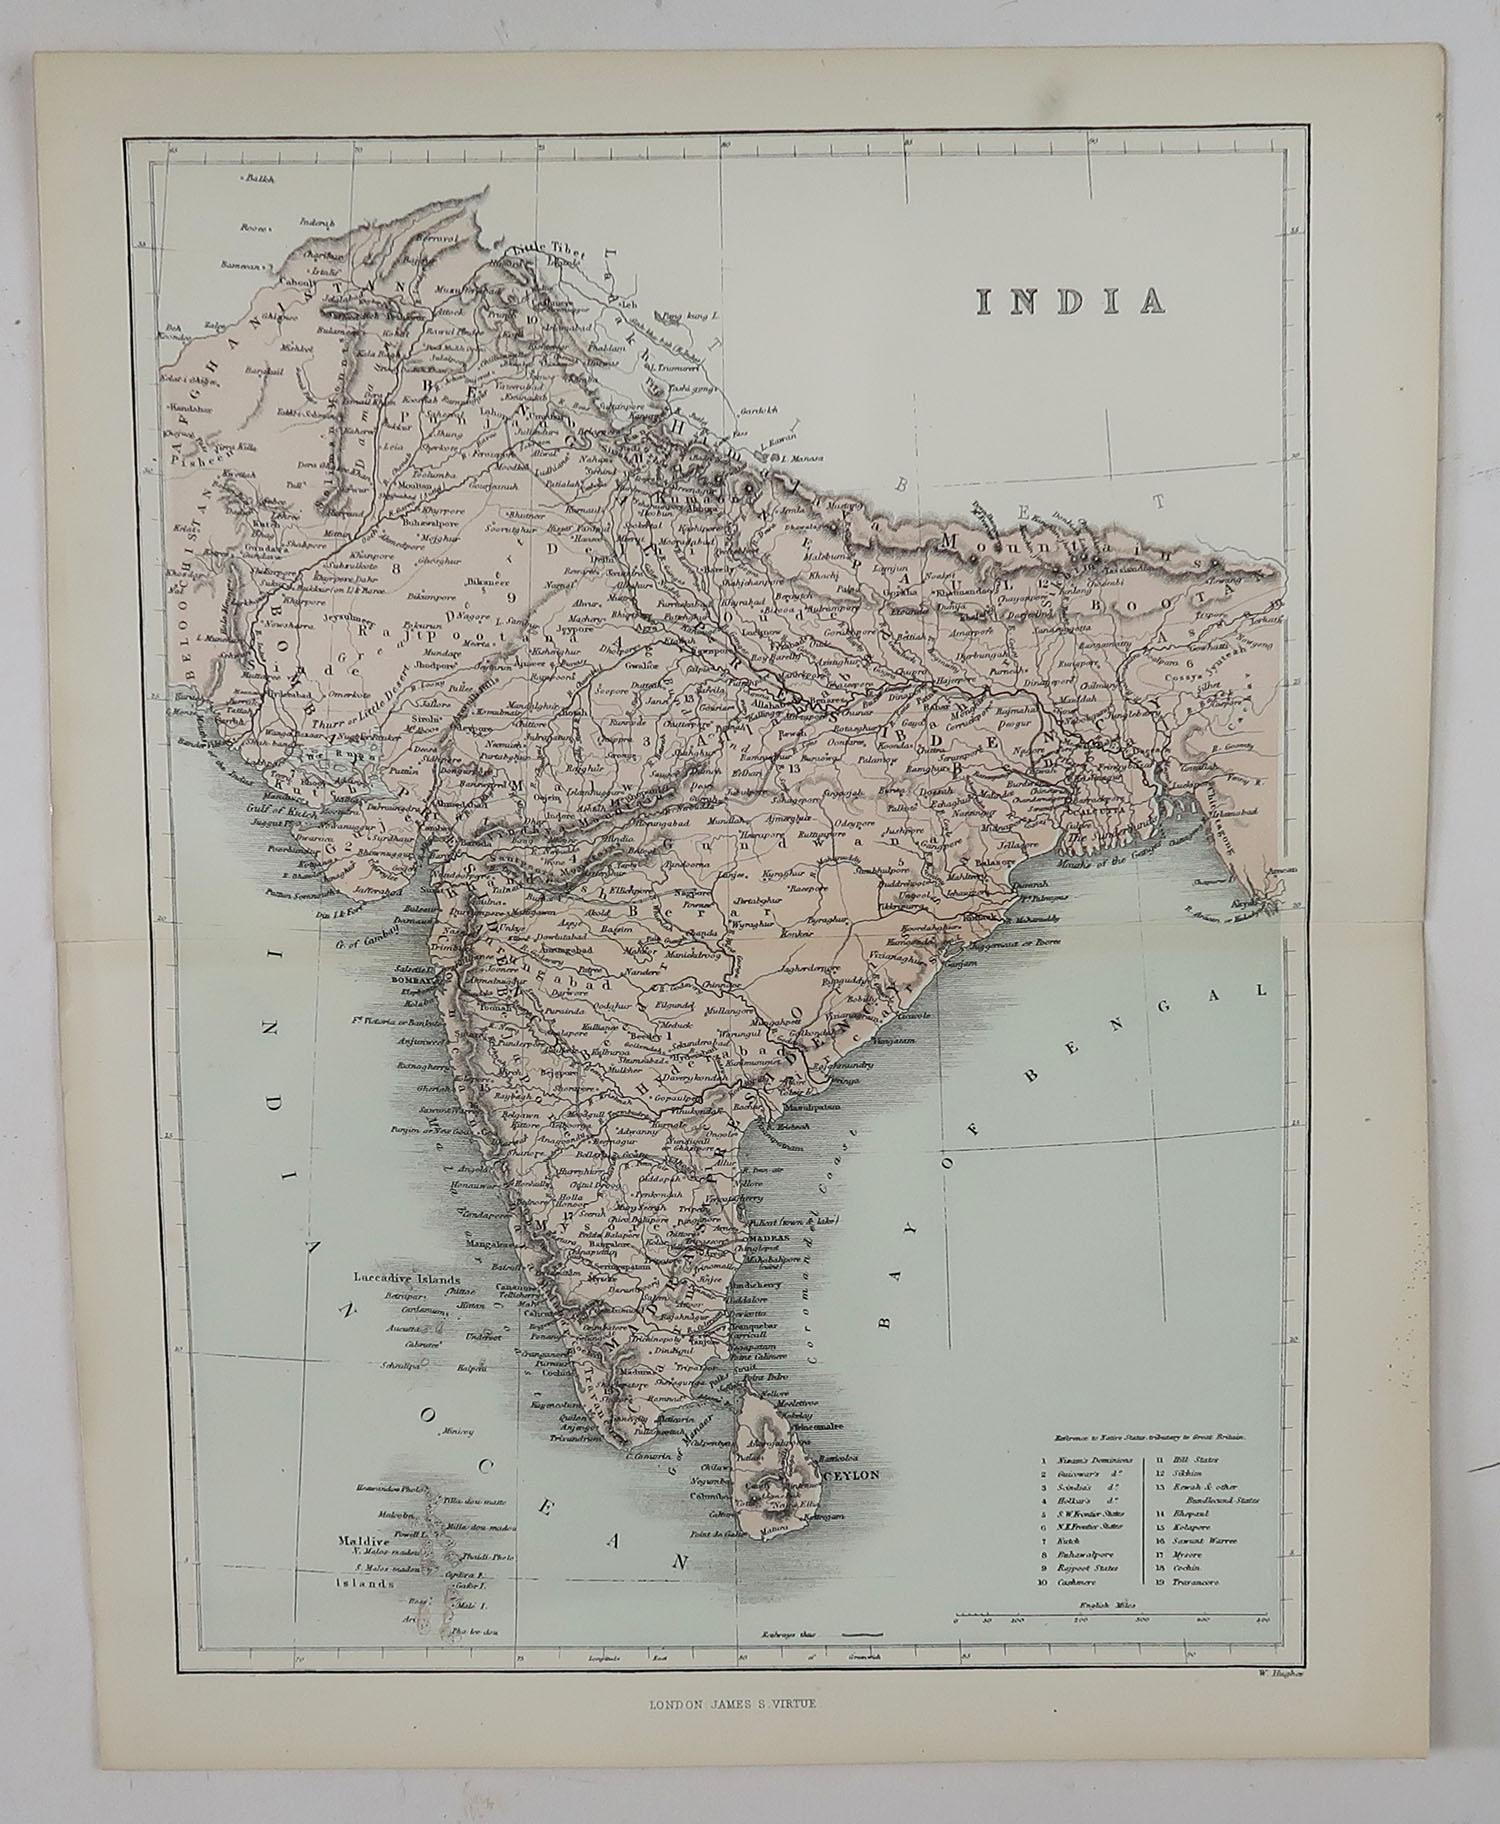 Other Original Antique Map of India, circa 1850